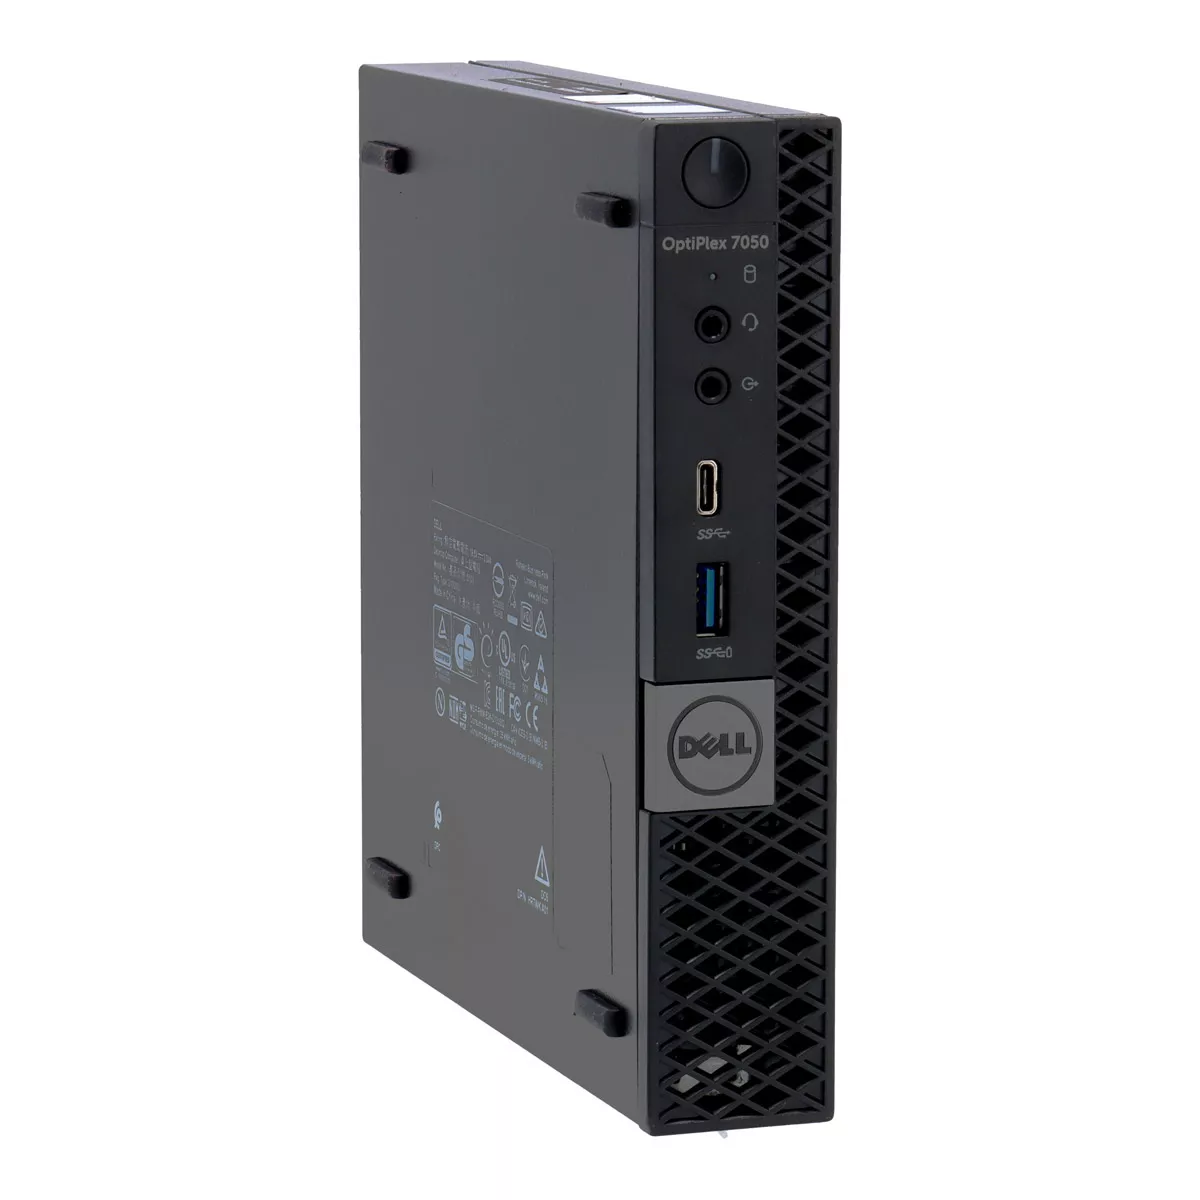 Dell Optiplex 7050 Micro Core i7 6700 240 GB M.2 nVME SSD A+